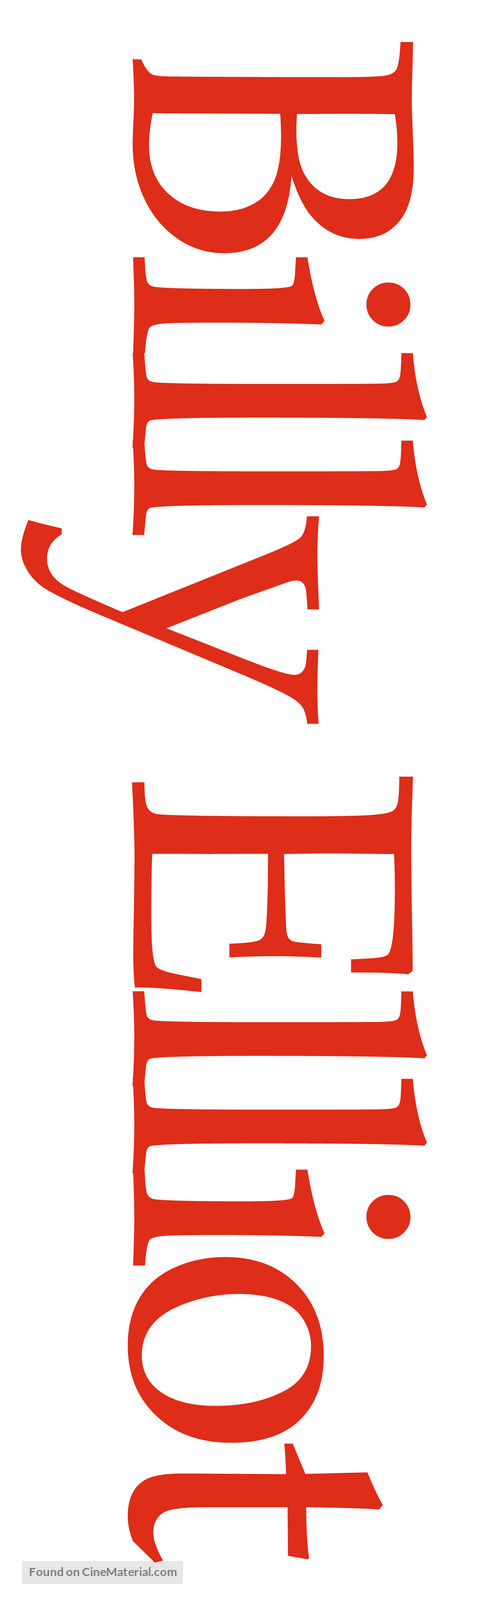 Billy Elliot - Logo